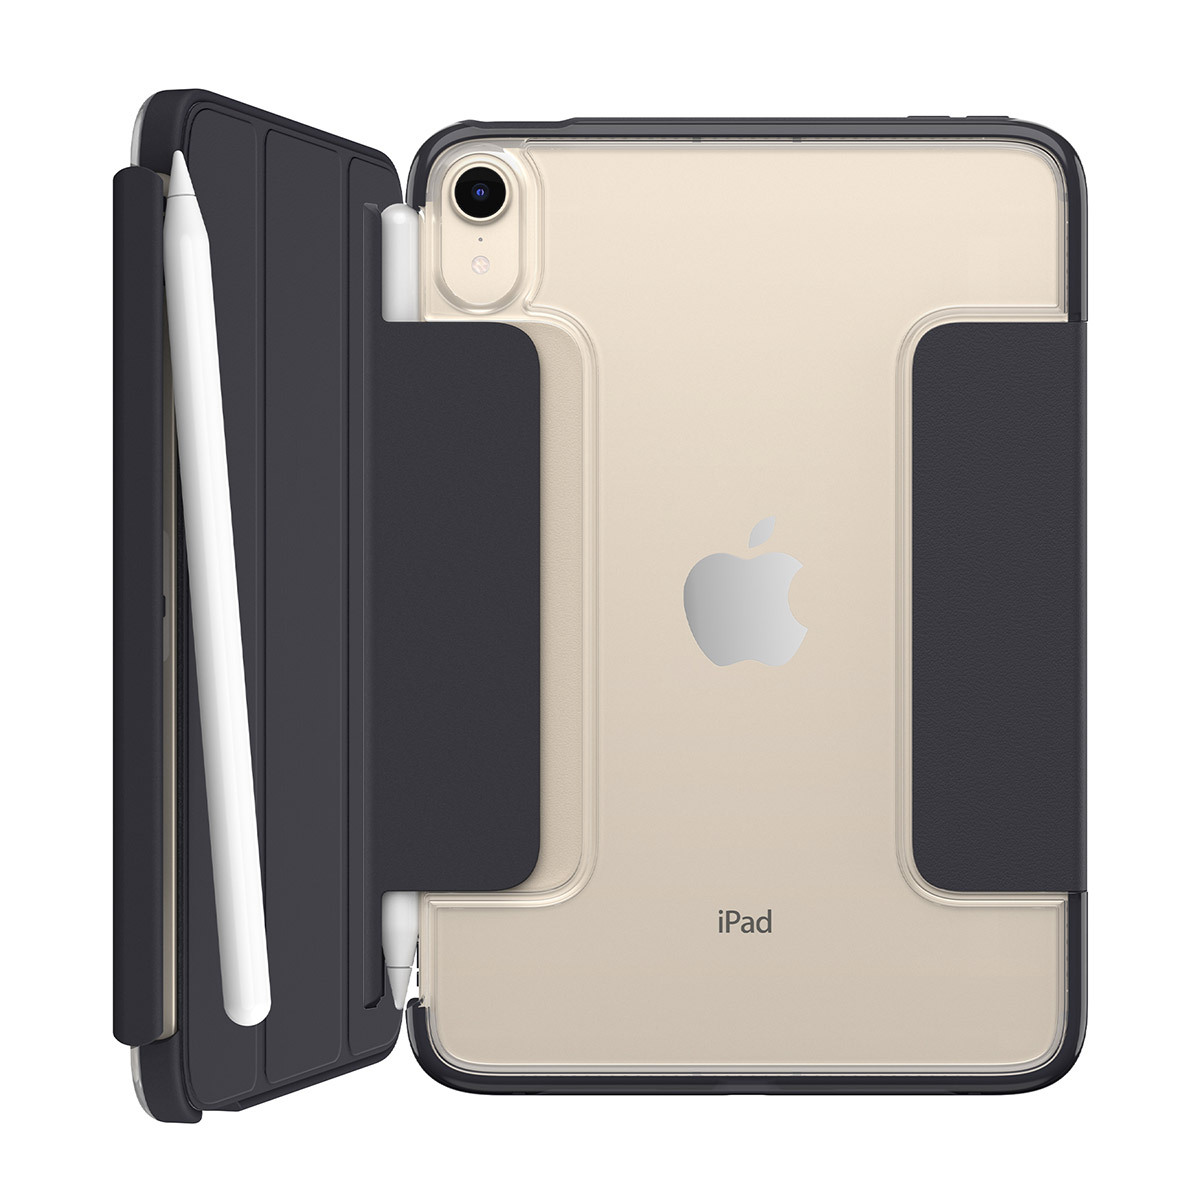 오터박스 시메트리 360 엘리트 아이패드 케이스 - iPad mini 6세대용